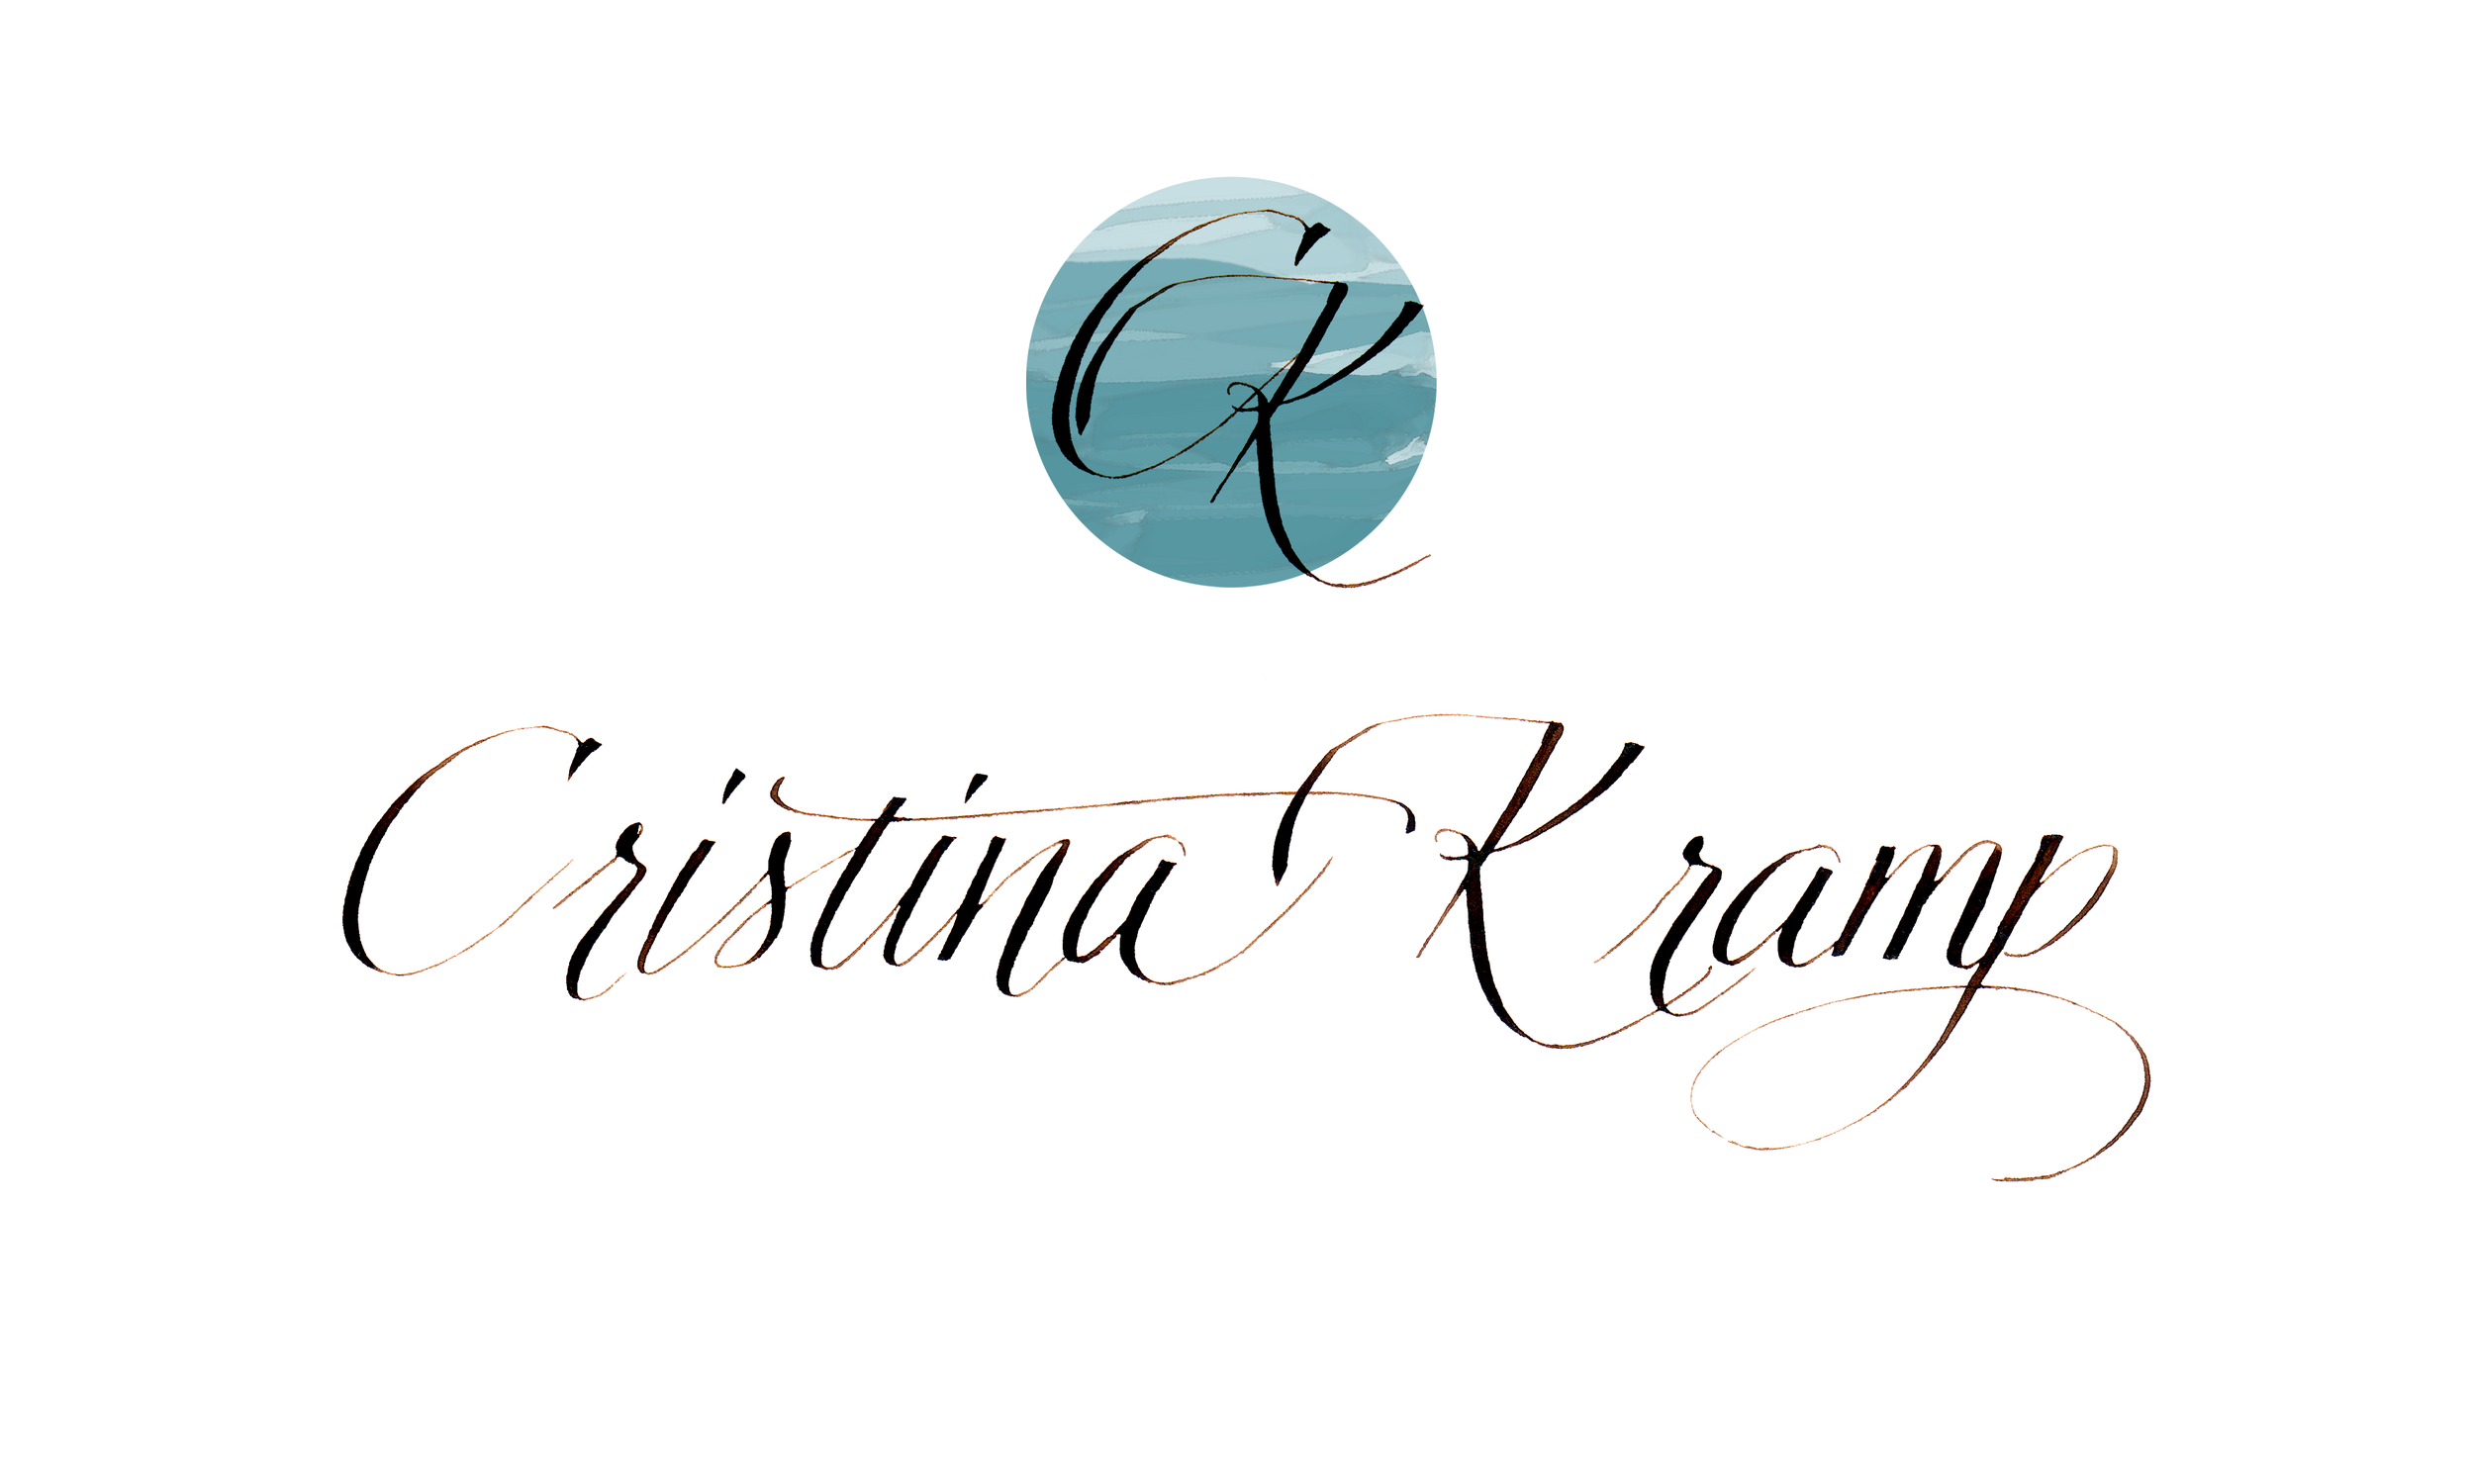 The name & logo — Cristina Kramp